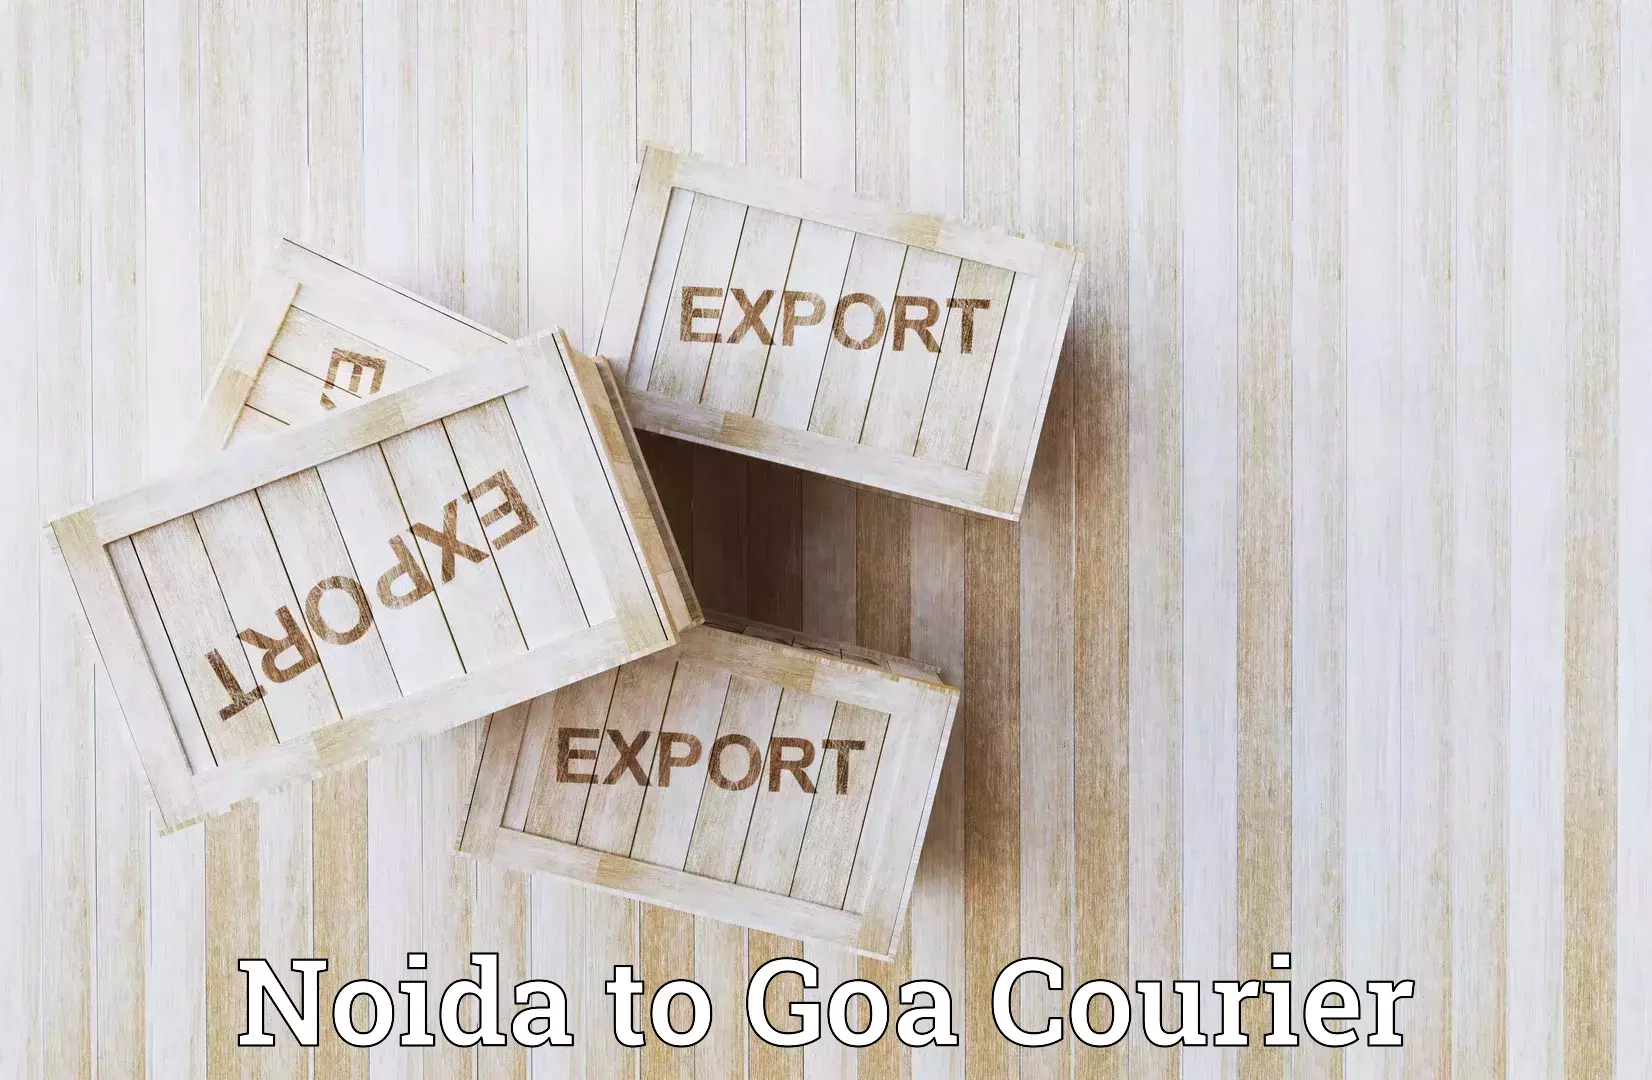 Express logistics service Noida to Panaji